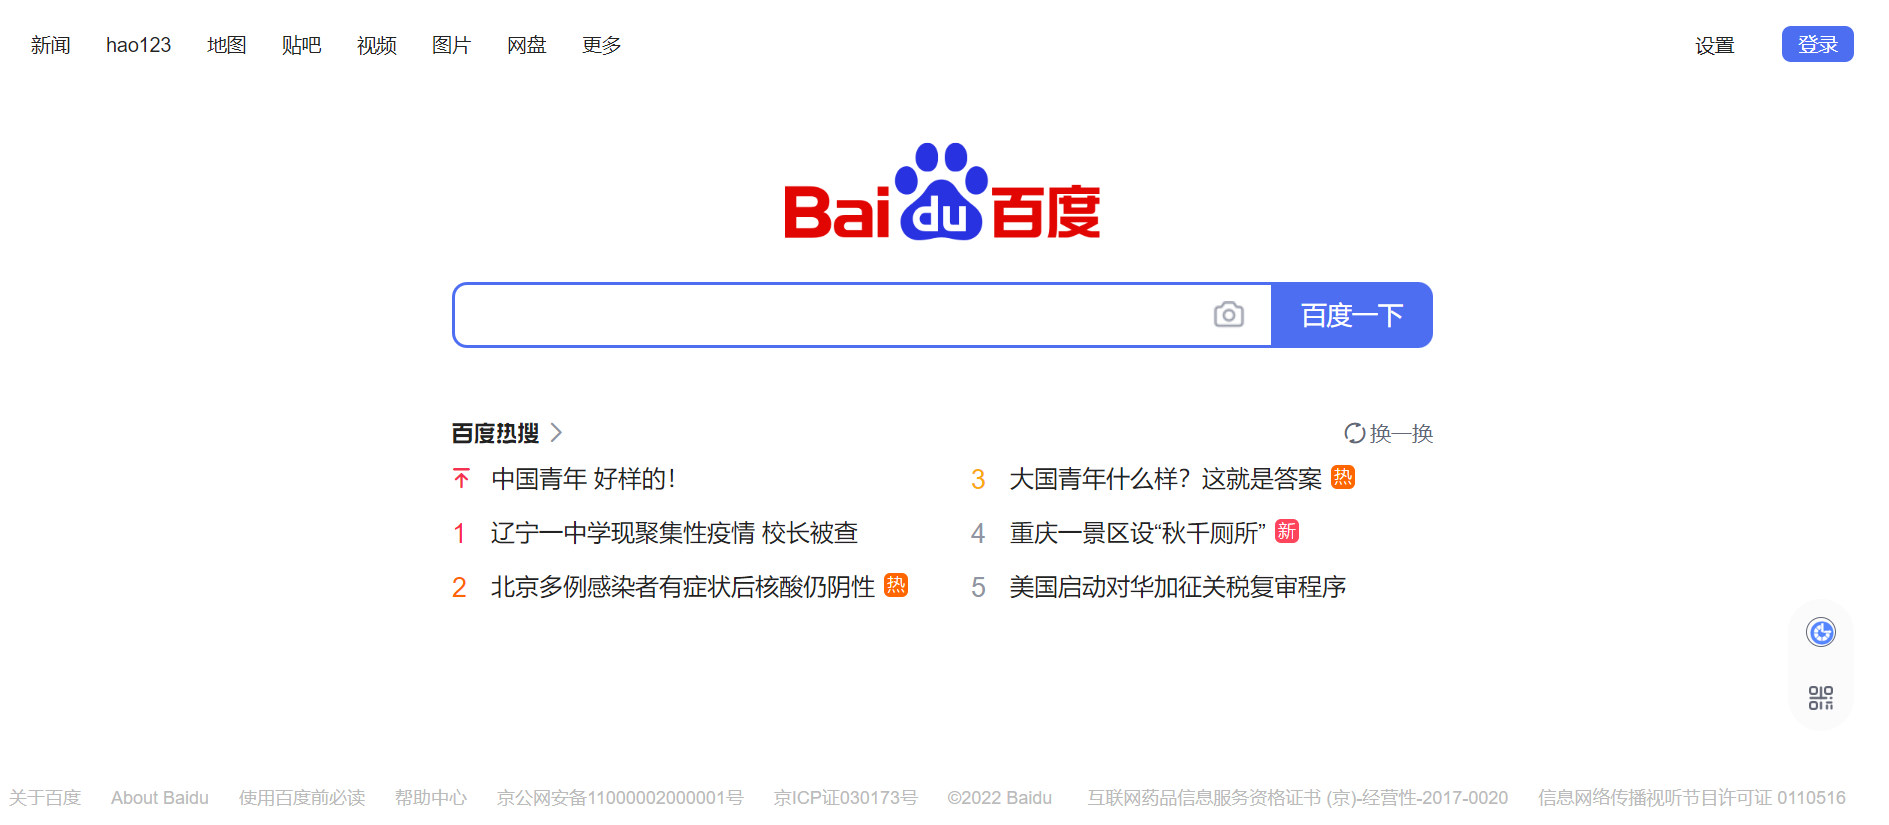 Buscadores aparte de Google: Baidu